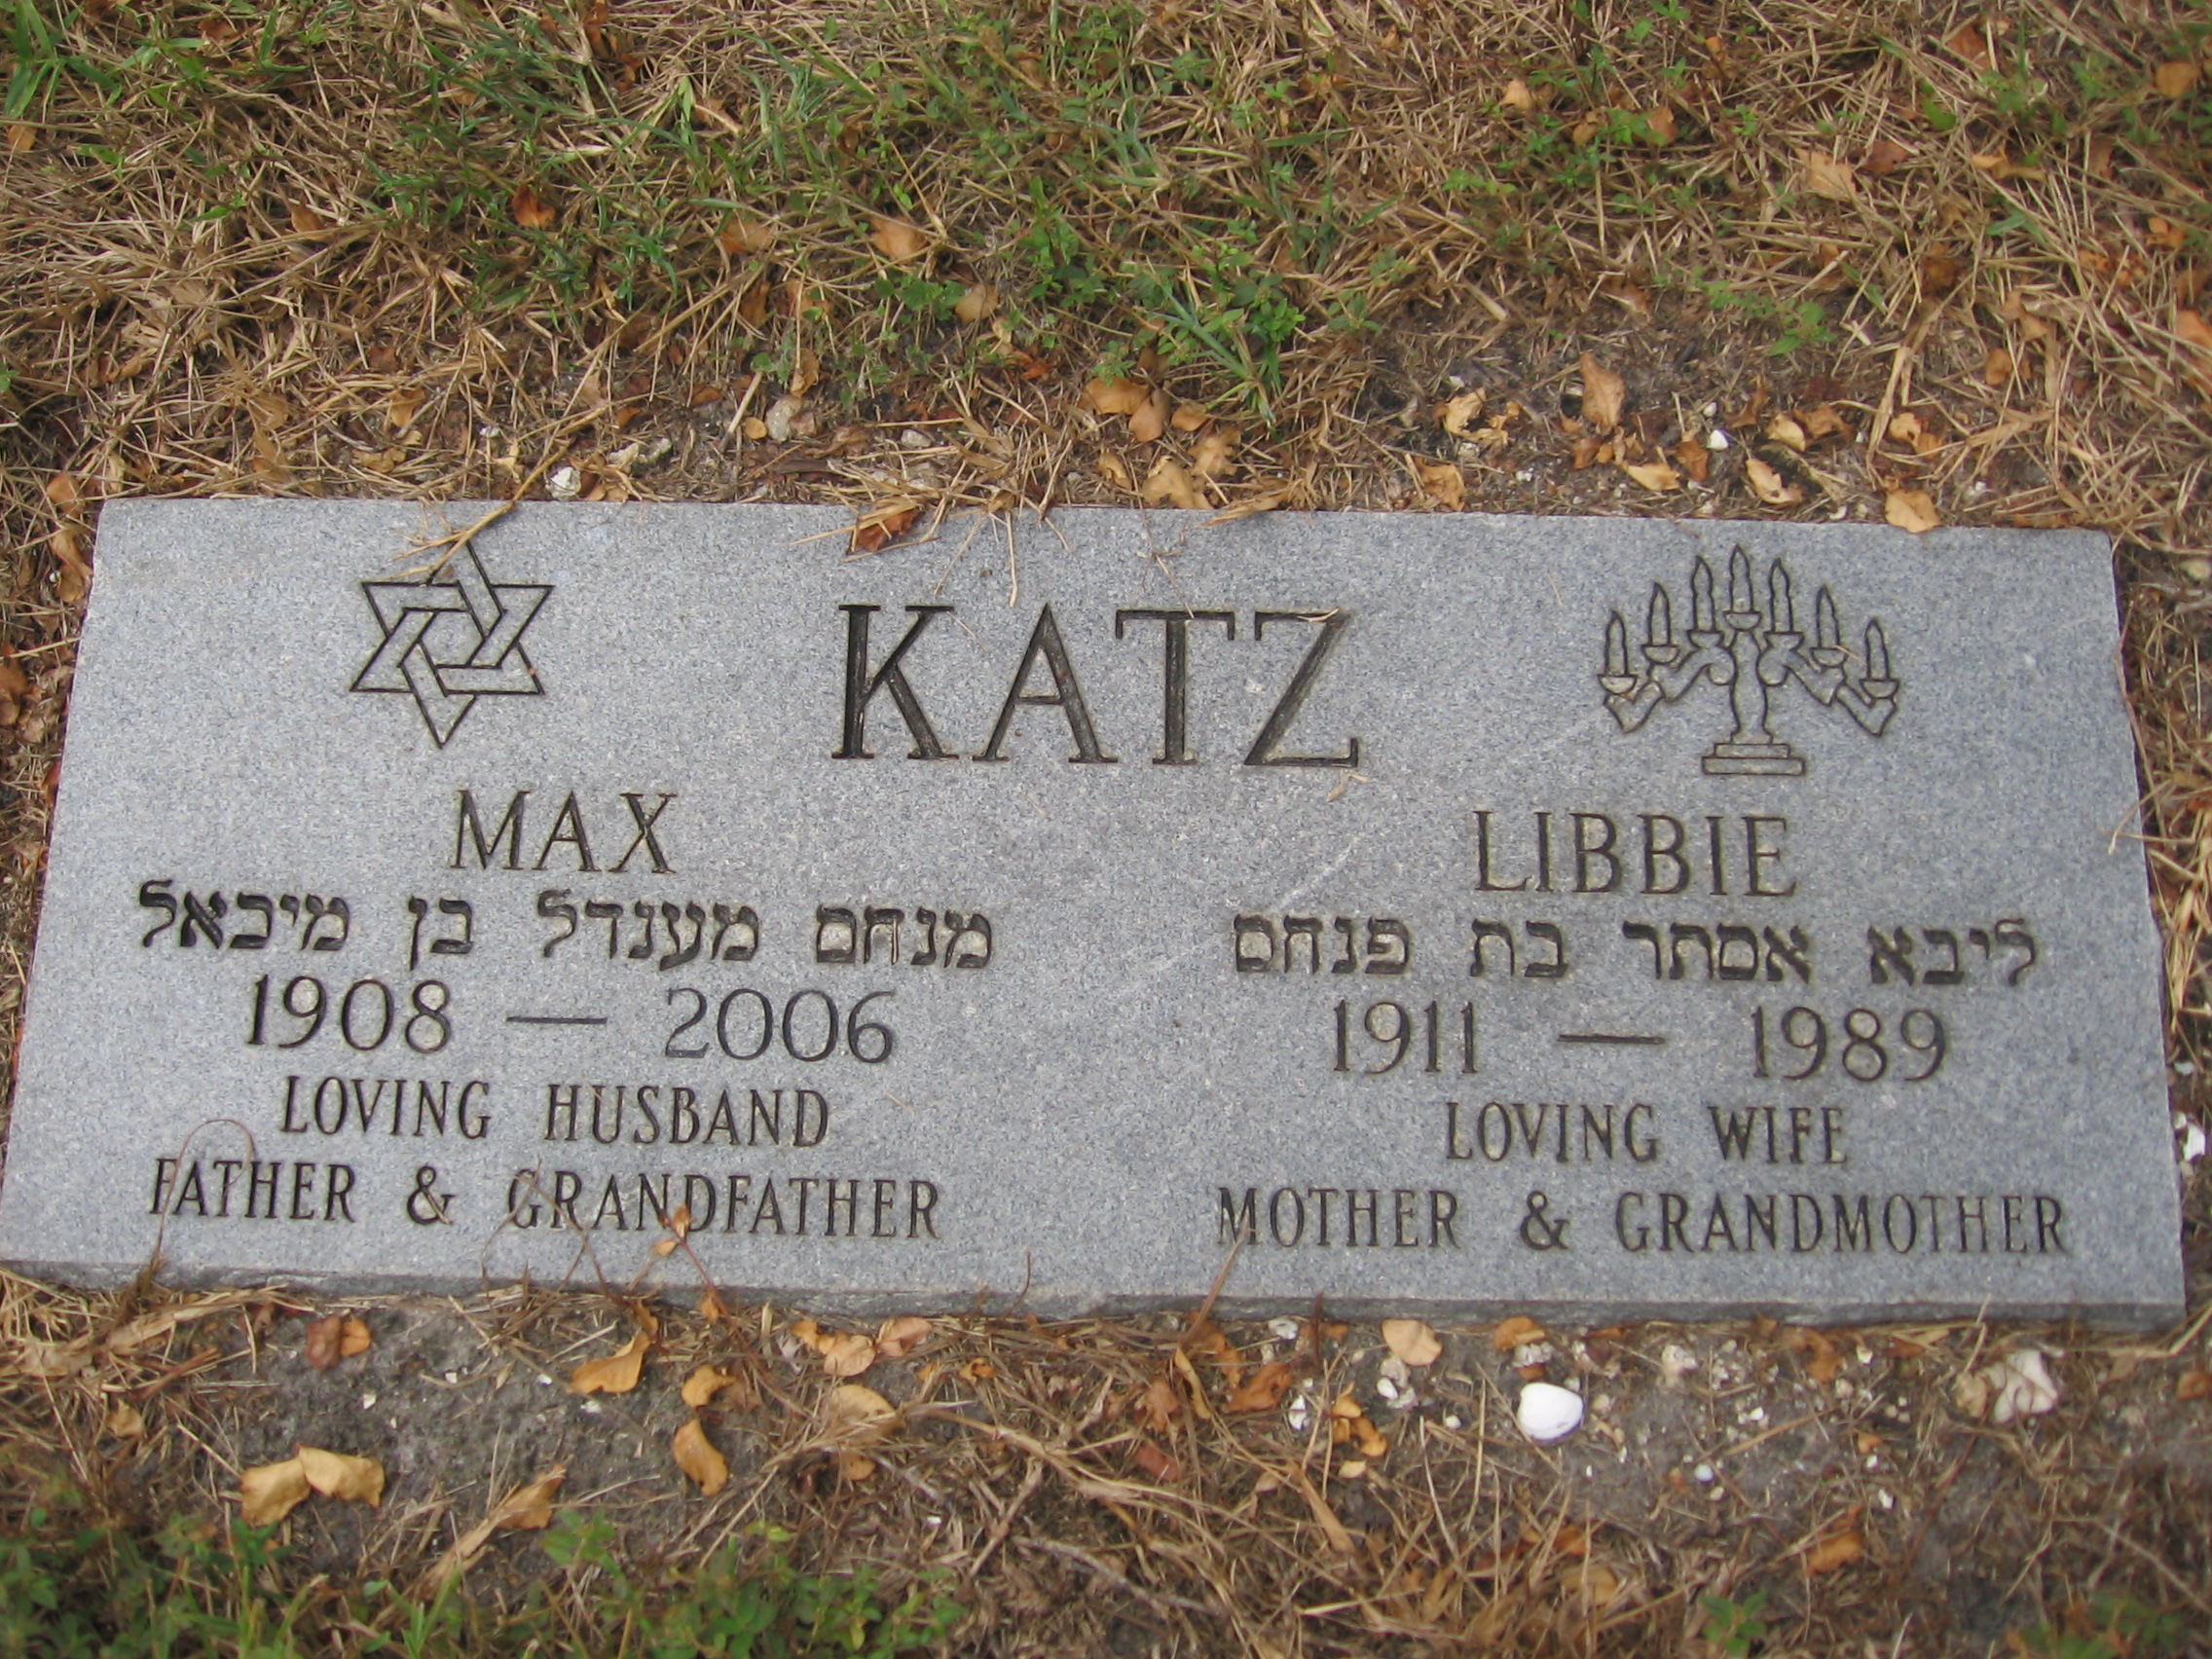 Max Katz